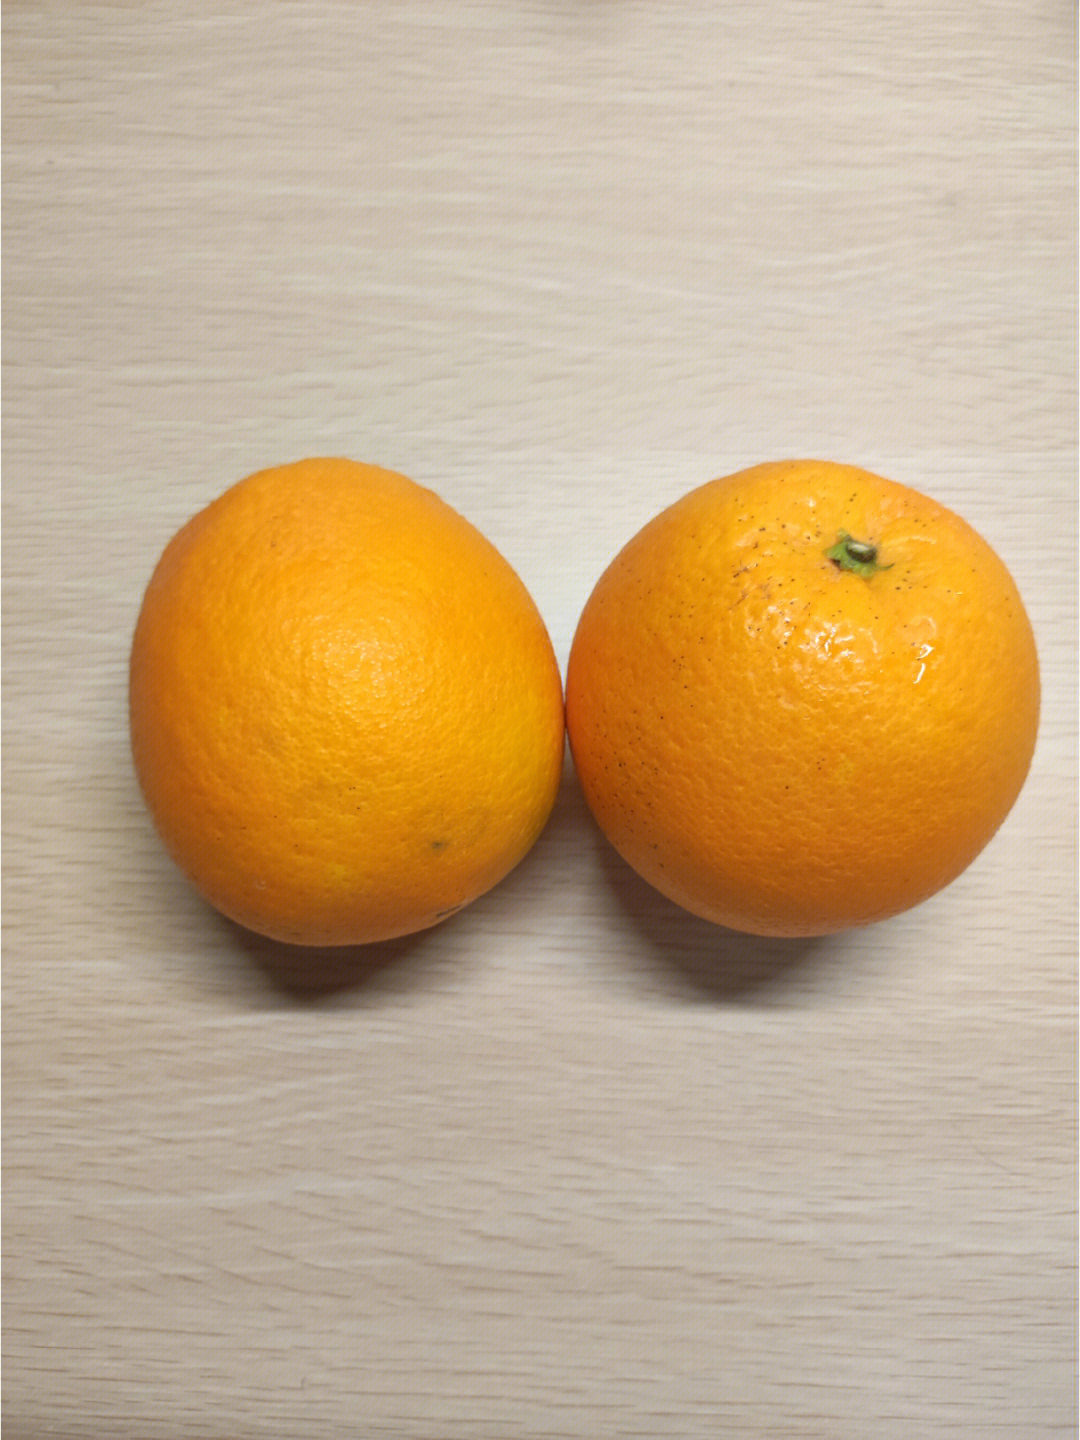 大橙子解说图片